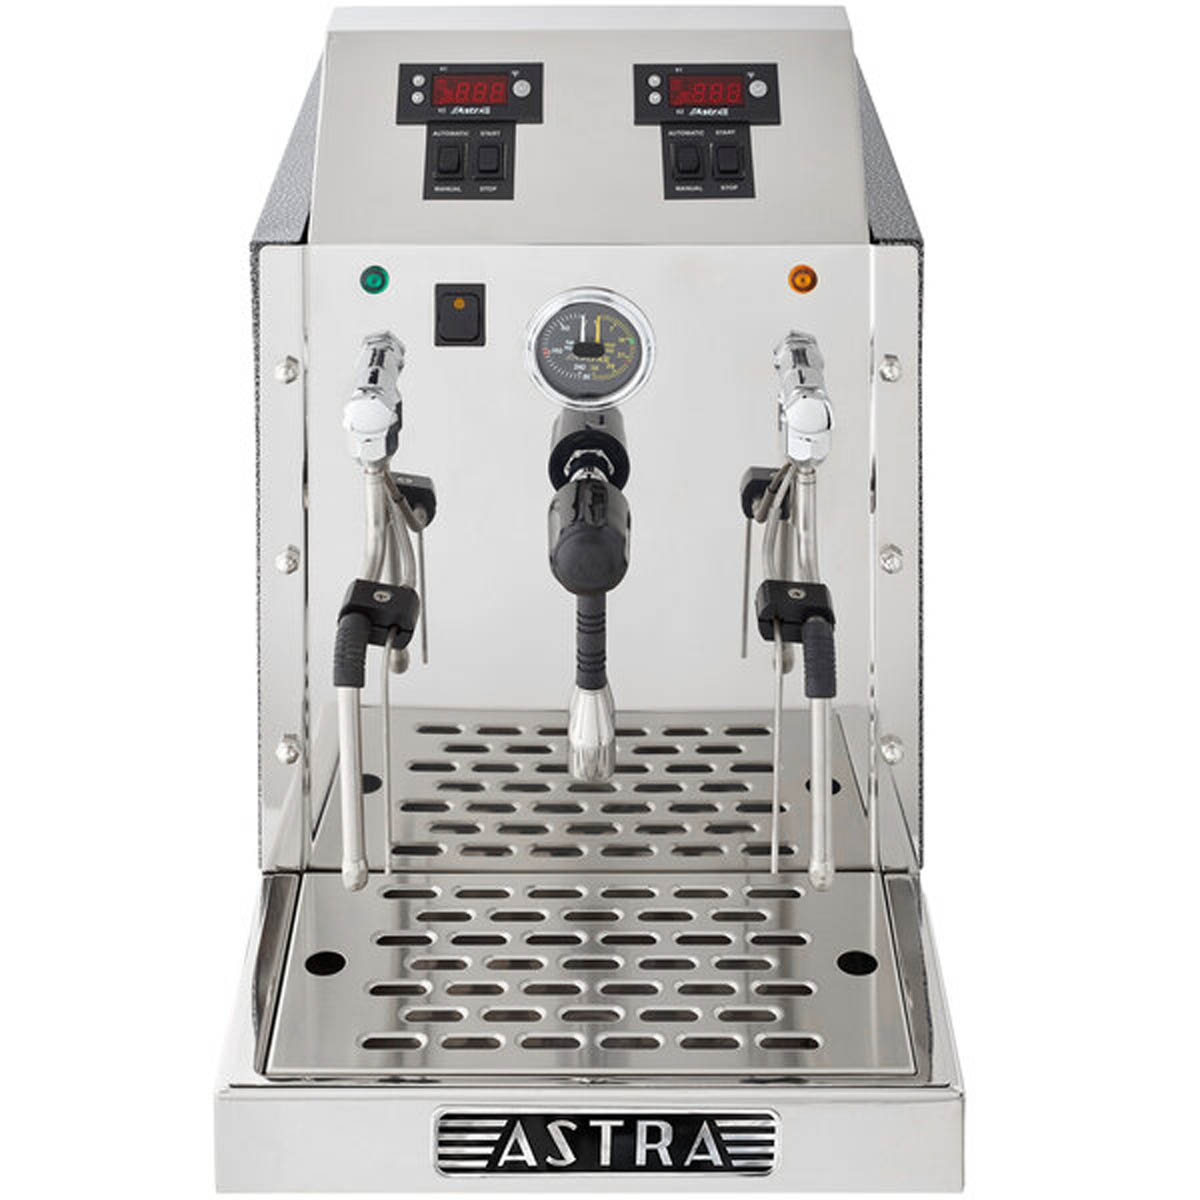 Astoria Steam Single AL1 Milk Steamer Frother Machines